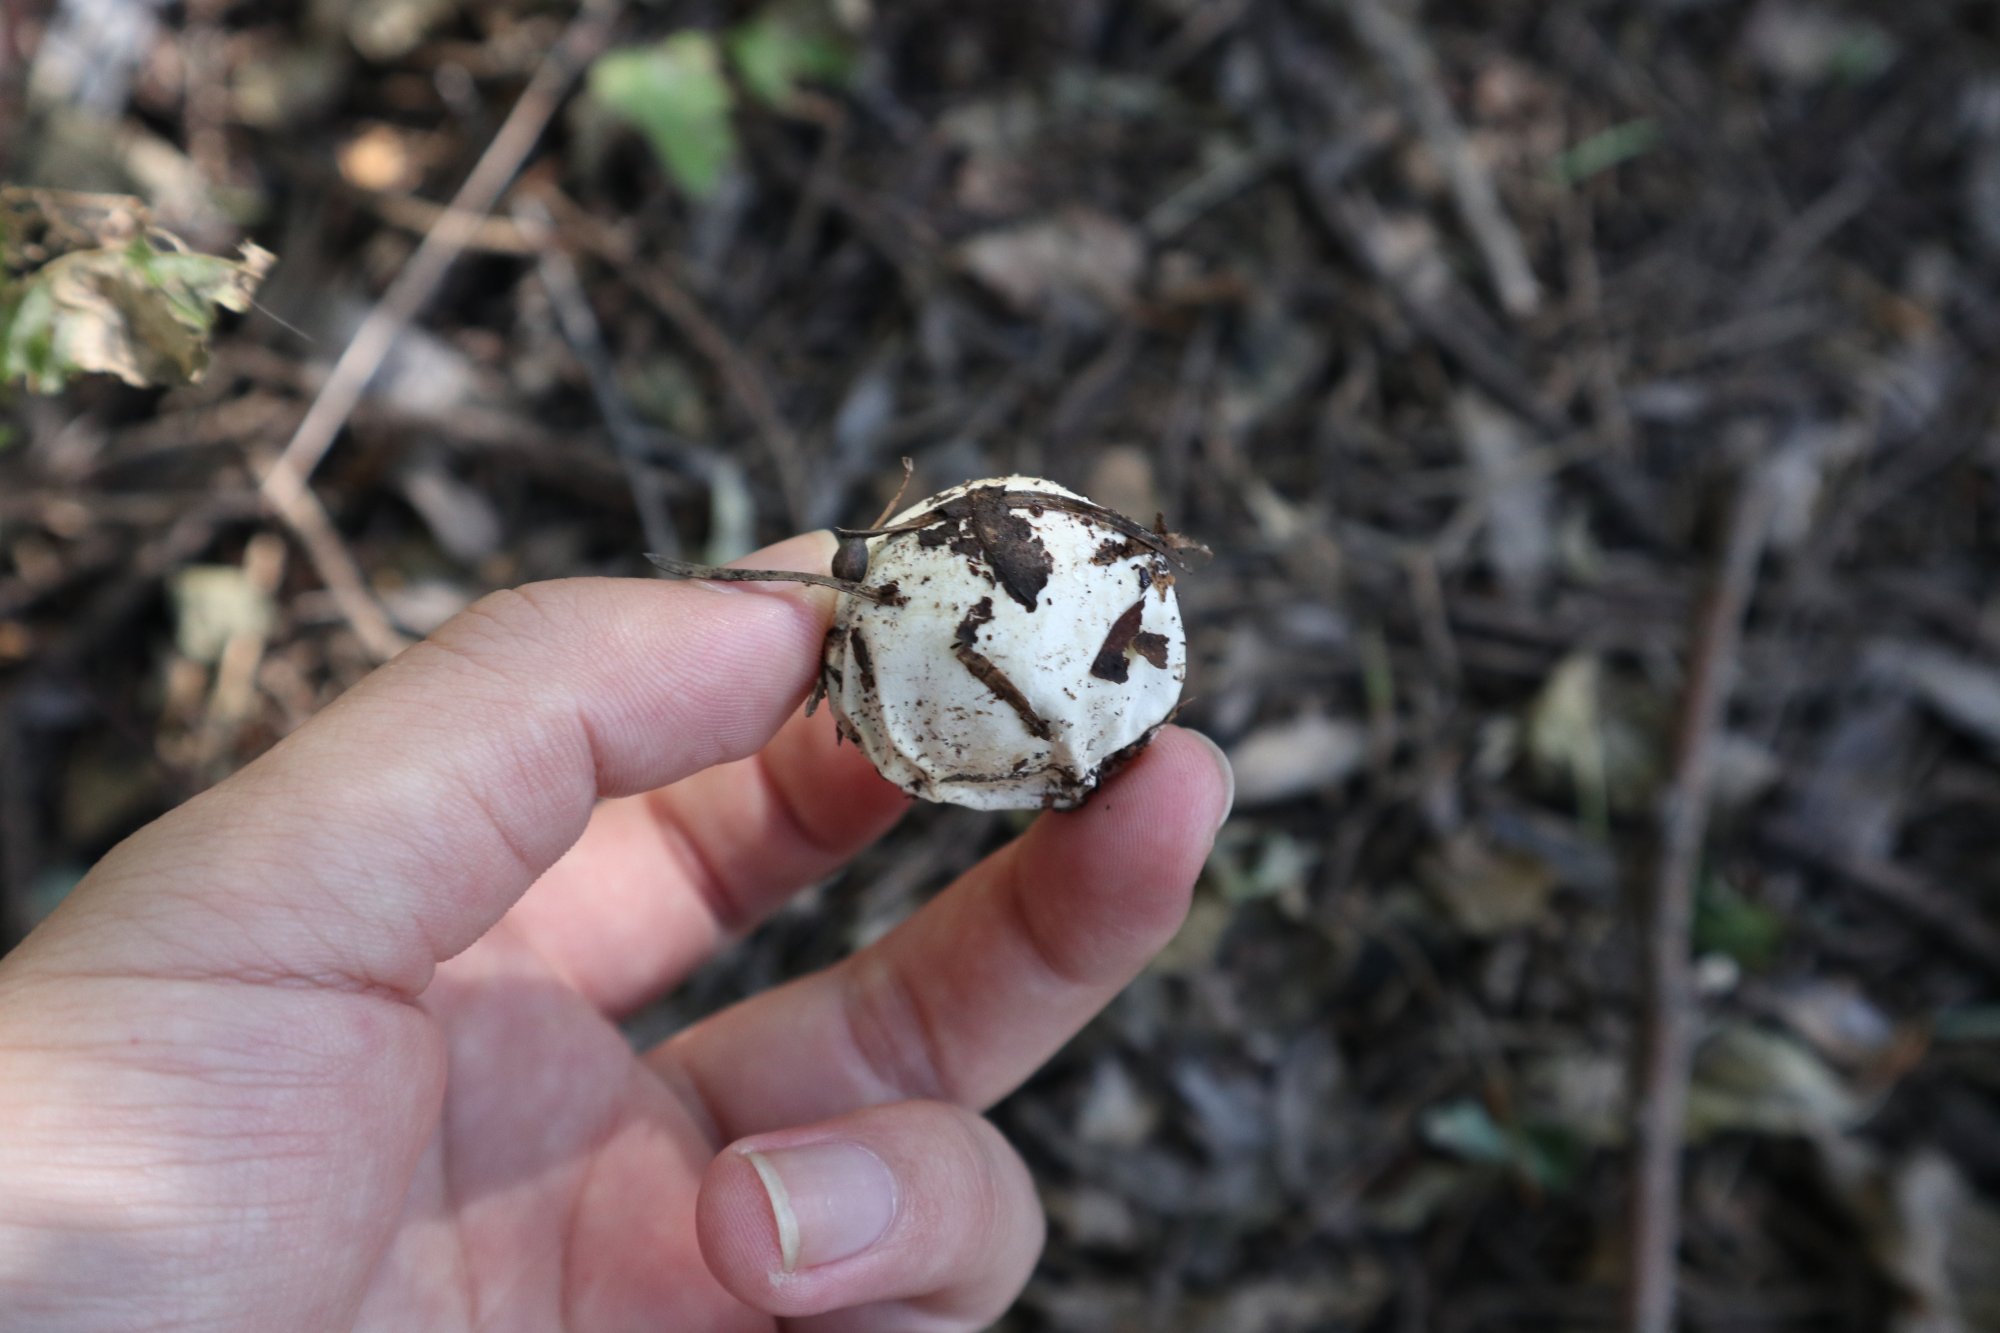 鬼笔蛋,蛋形的蘑菇